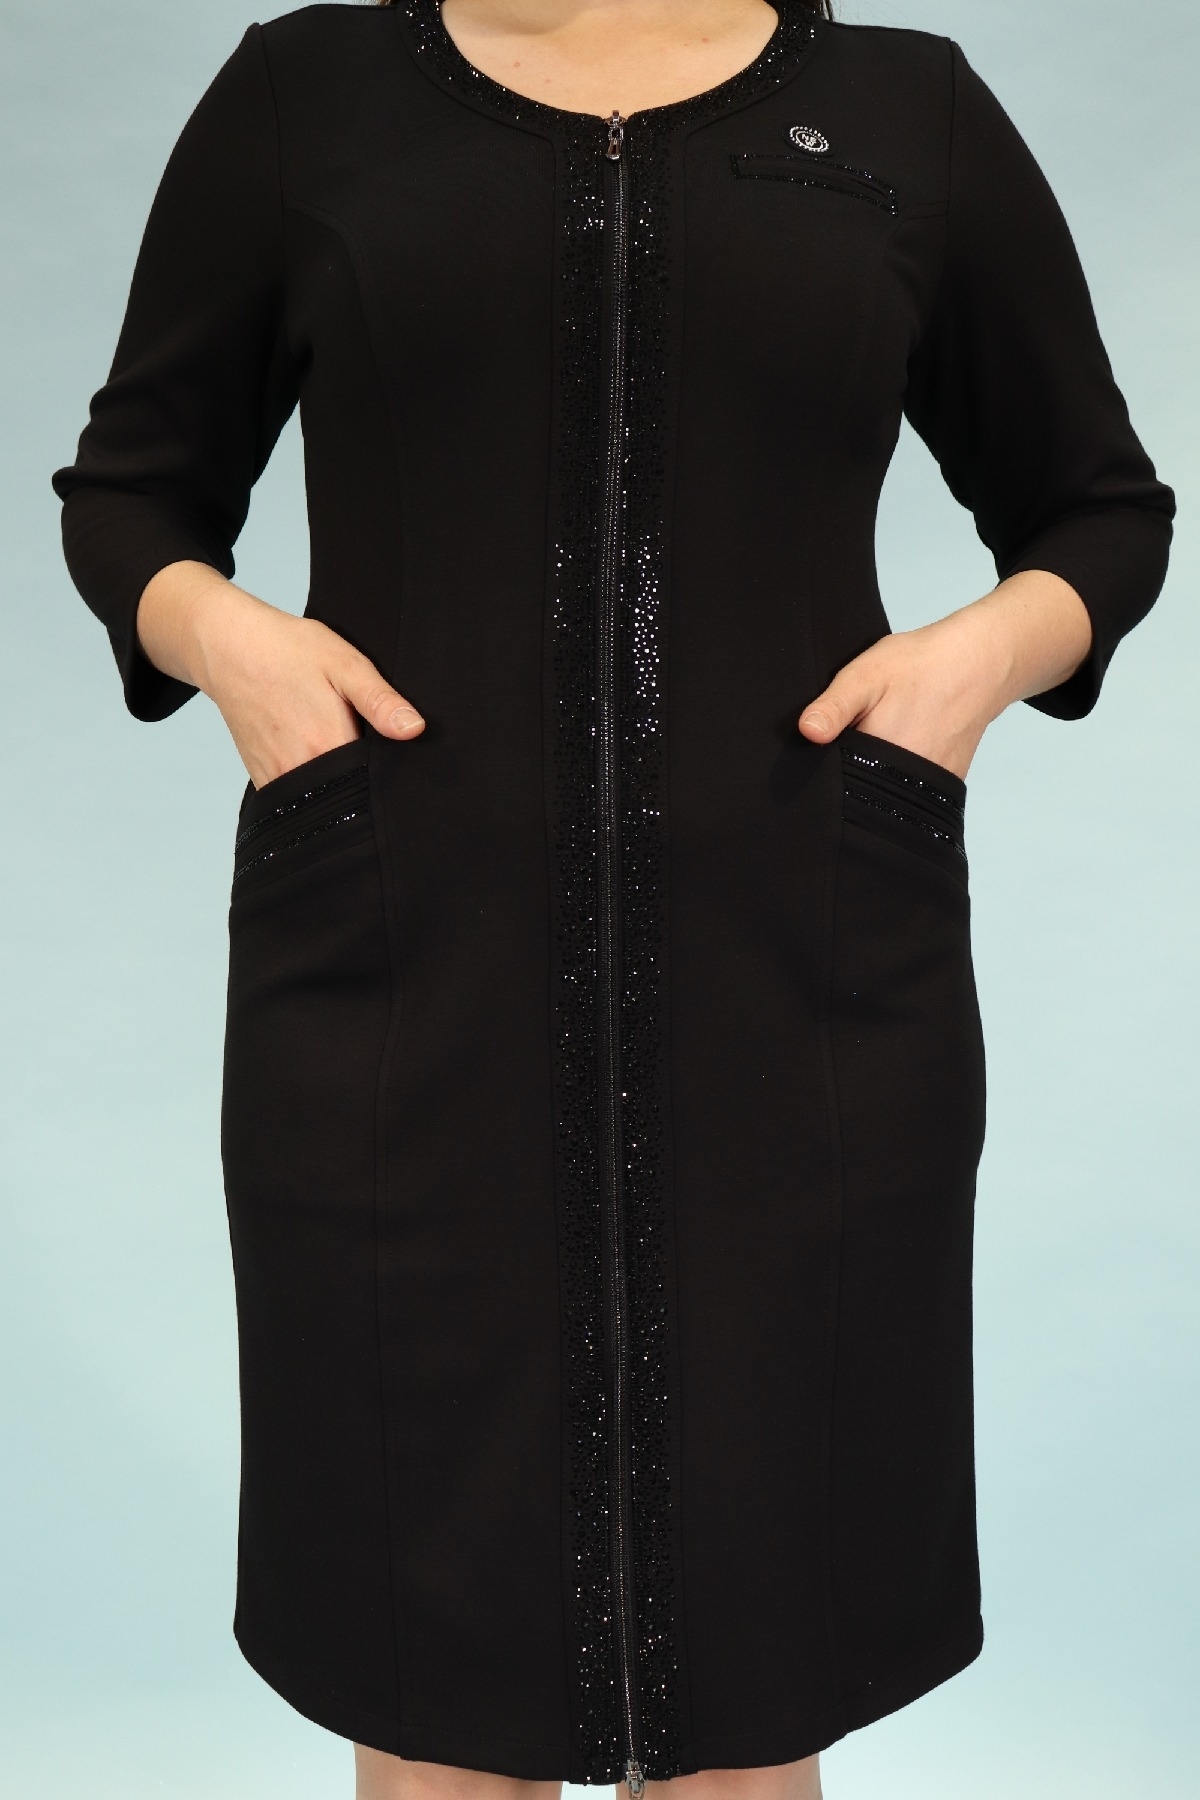 büyük beden diz üstü sıfır yaka fermuarlı payet işlemeli siyah renk şık elbise 